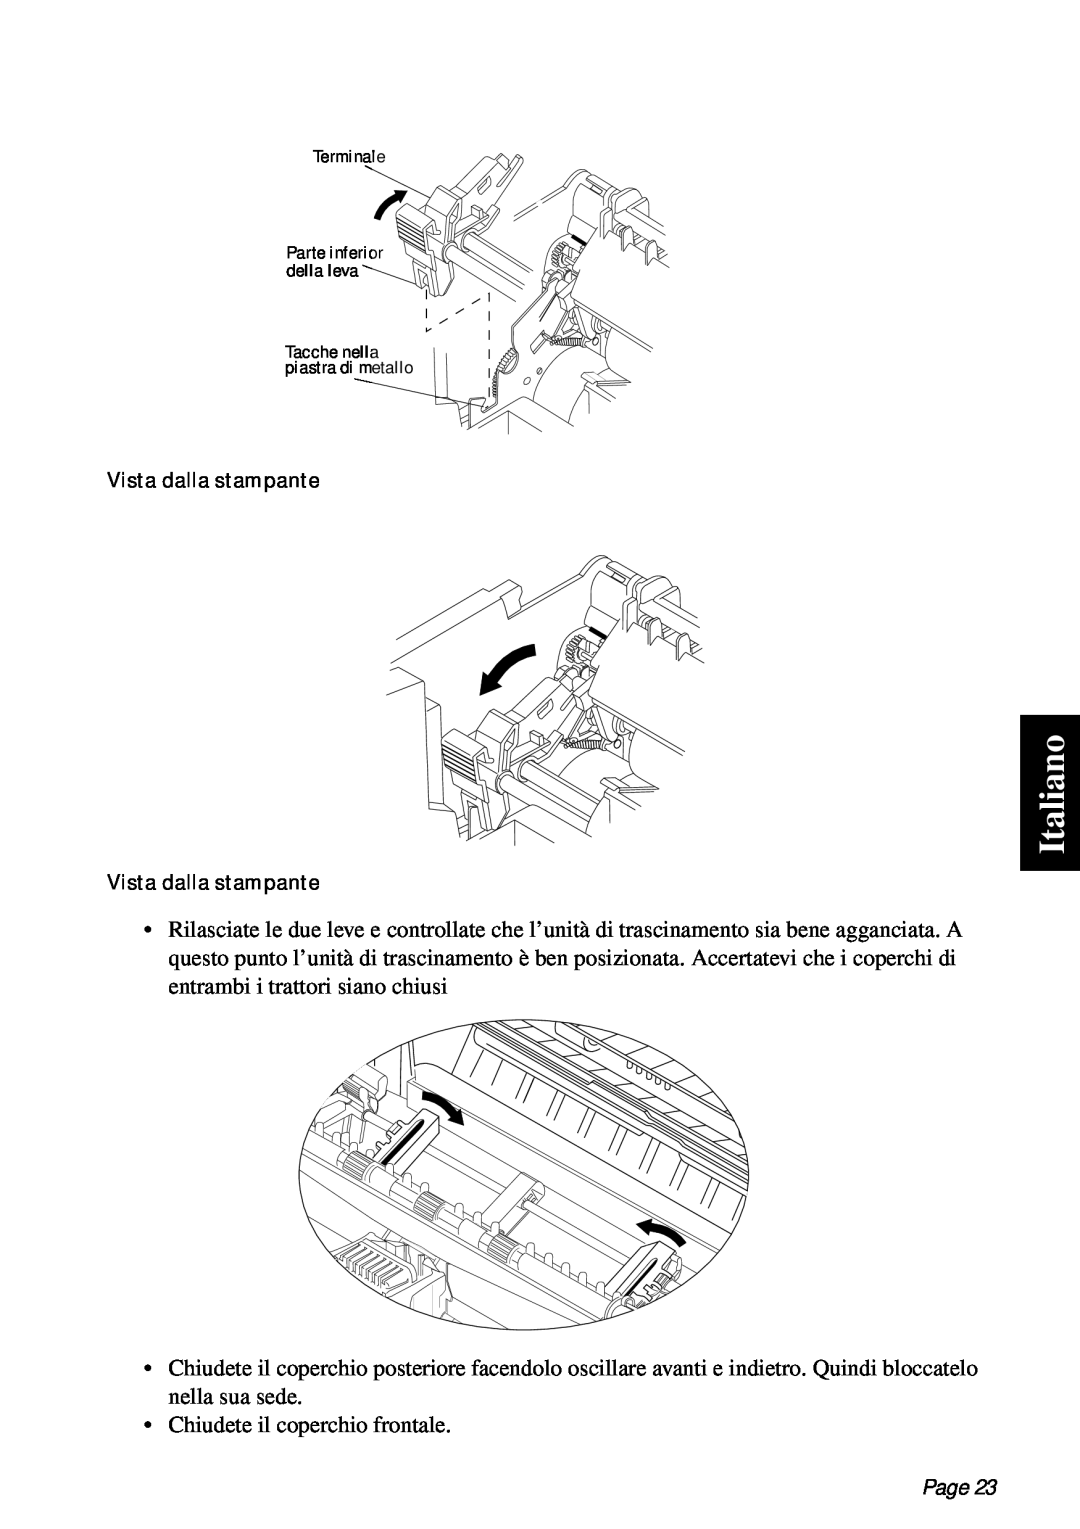 Star Micronics PT-10Q user manual Italiano, Chiudete il coperchio frontale, Page 